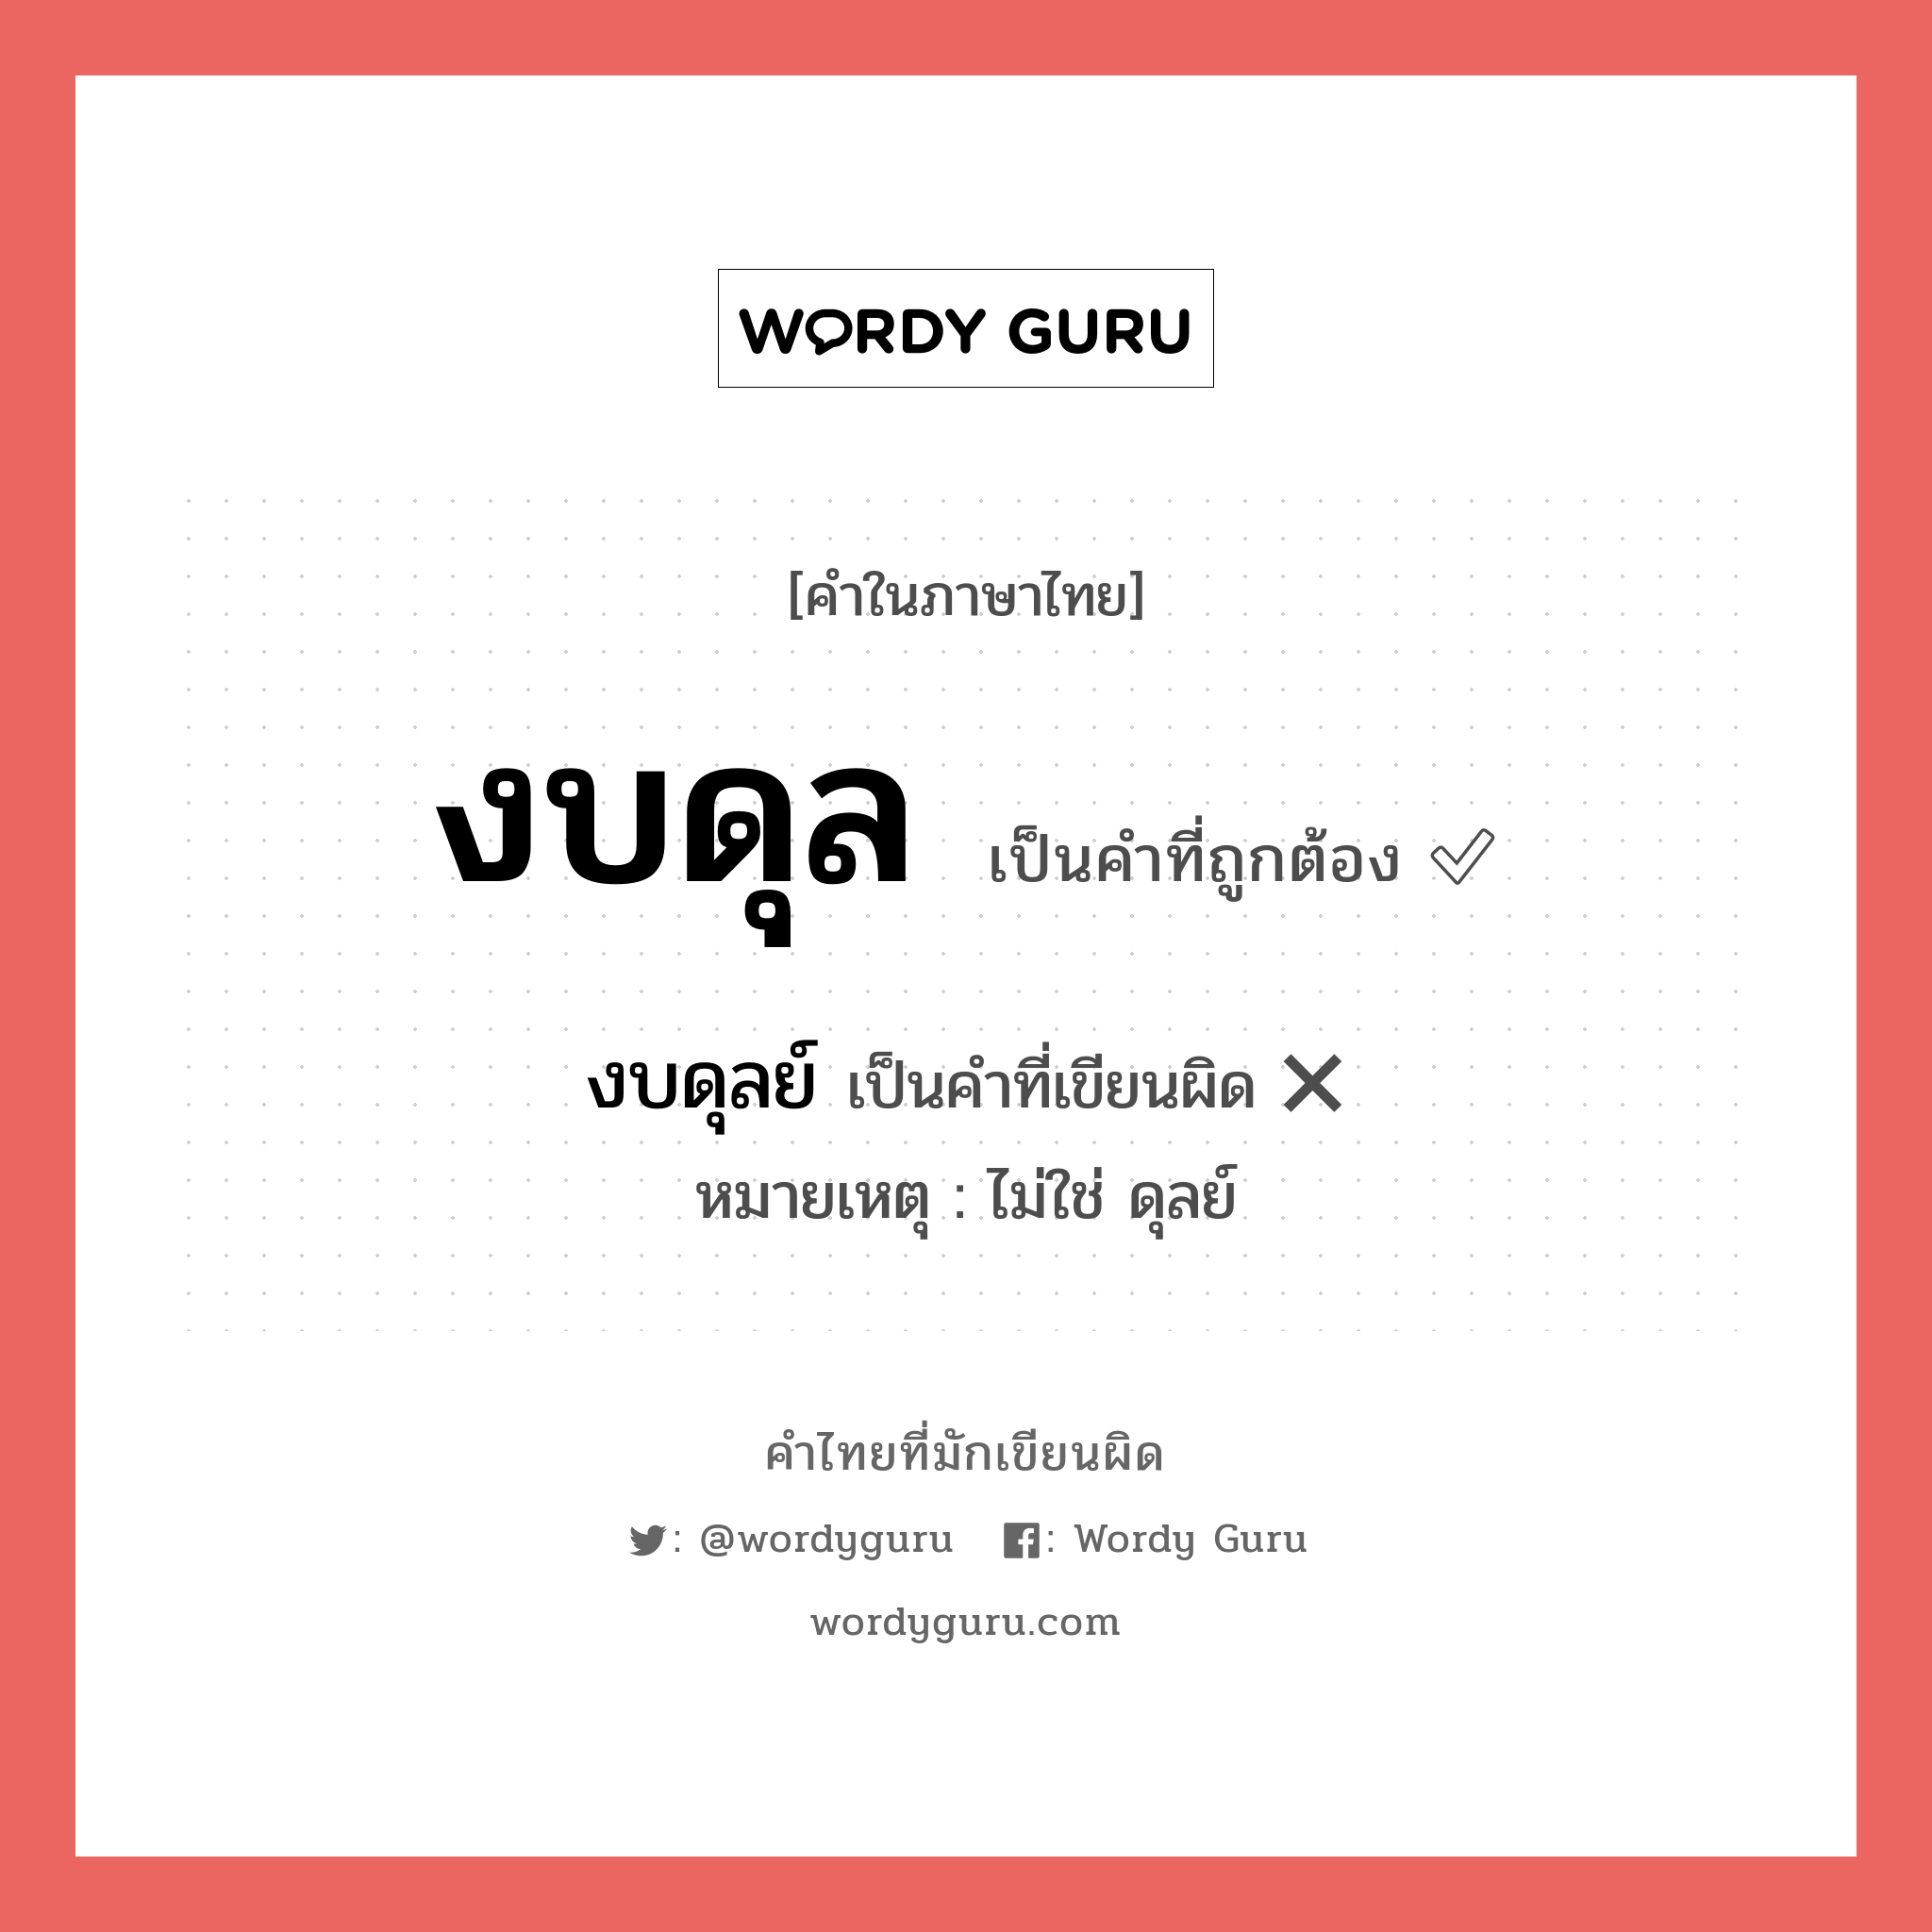 งบดุลย์ หรือ งบดุล คำไหนเขียนถูก?, คำในภาษาไทยที่มักเขียนผิด งบดุลย์ คำที่ผิด ❌ งบดุล หมายเหตุ ไม่ใช่ ดุลย์